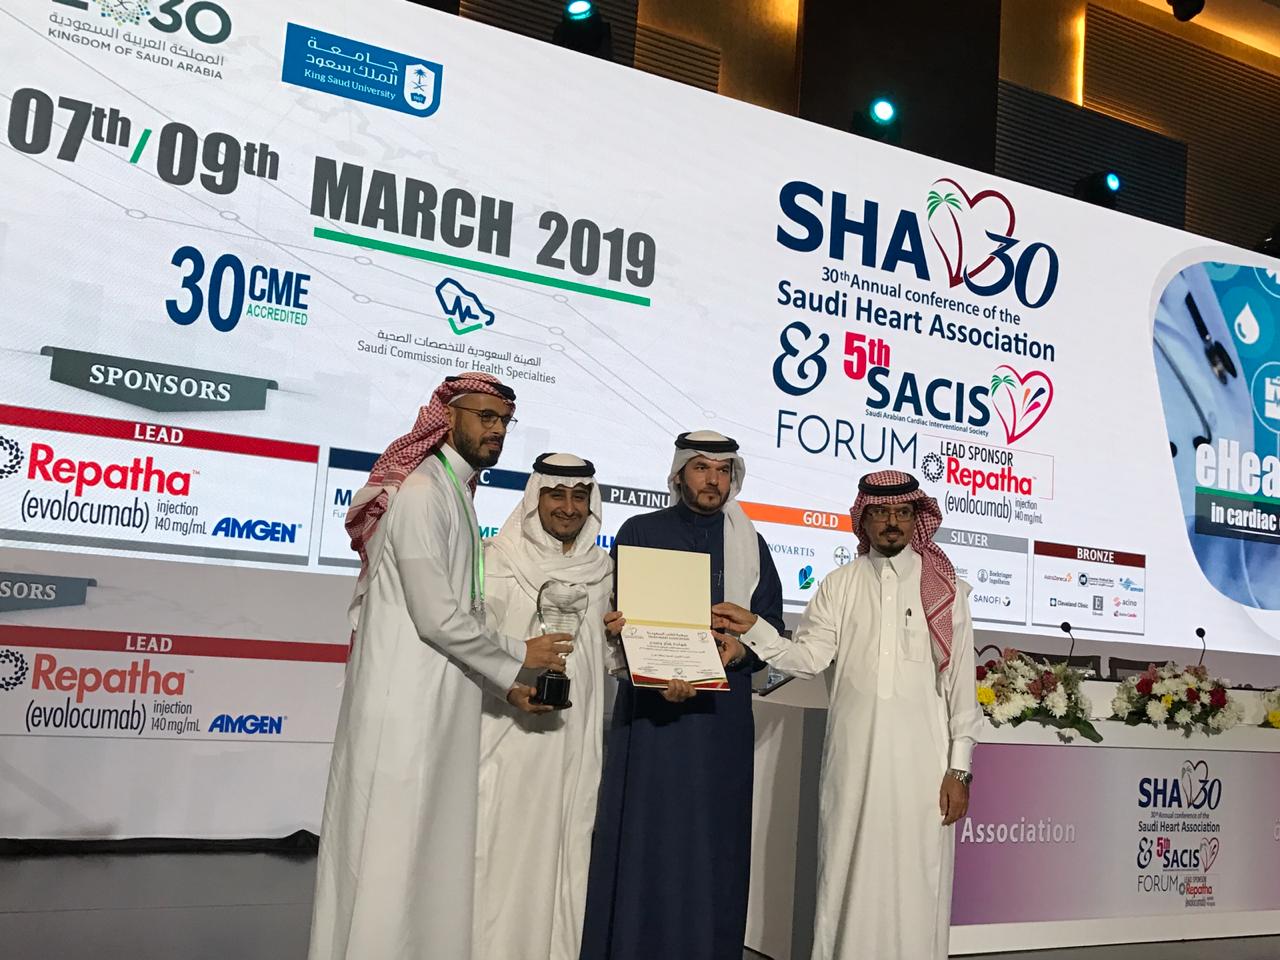 انطلاق فعاليات المؤتمر السنوي الـ 30 لجمعية القلب السعودية